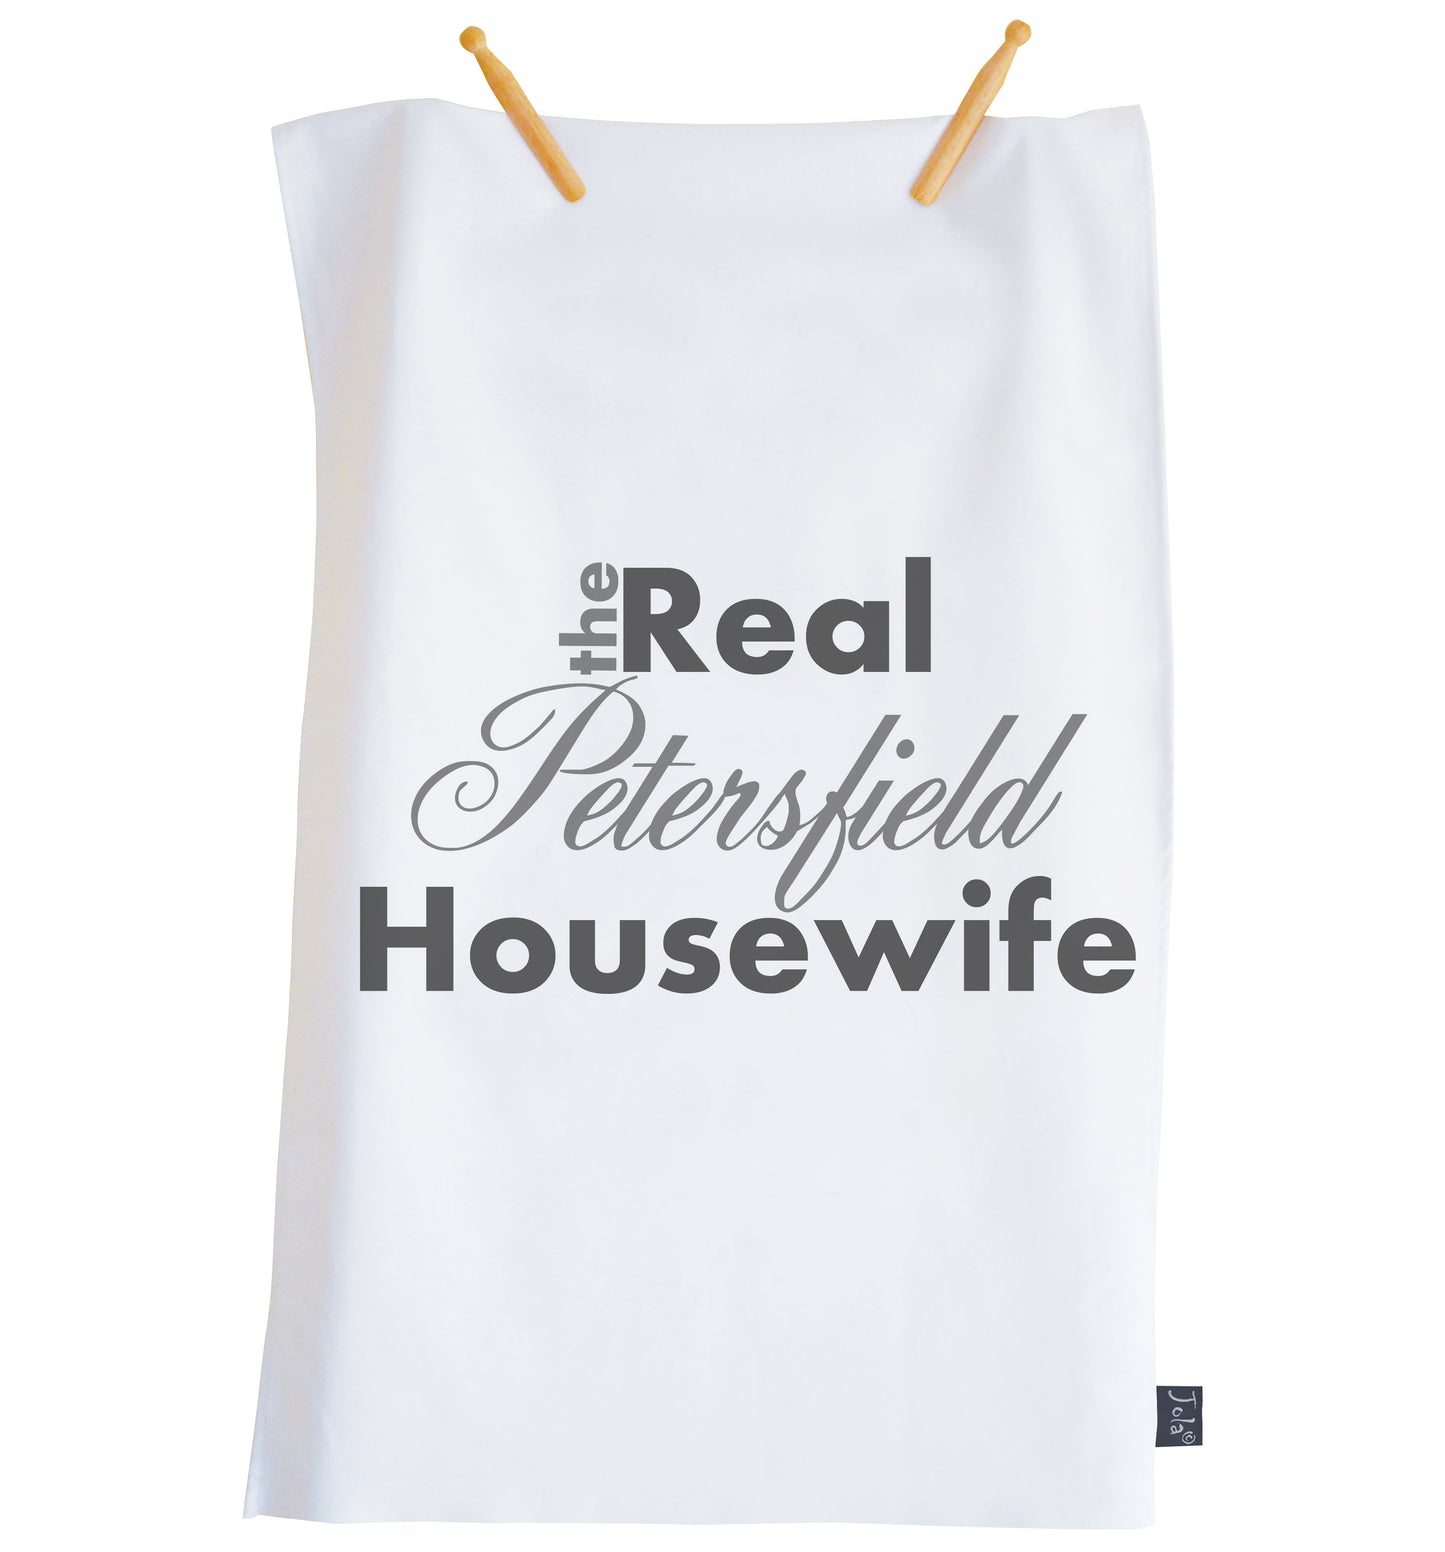 Personalised The Real Housewife Tea Towel - Jola Designs